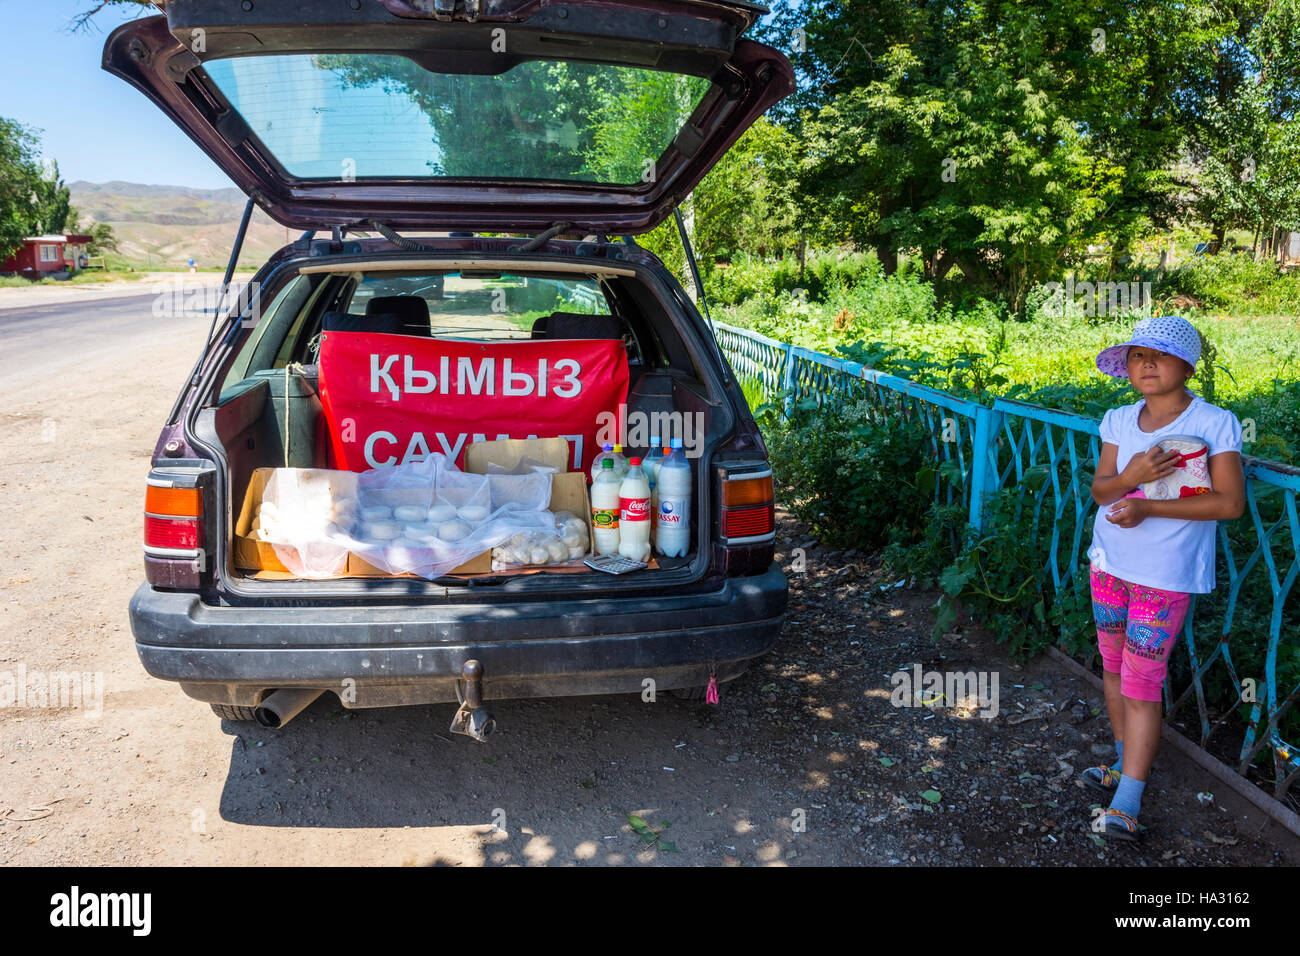 ALMATY, KAZAKHSTAN - 10 Luglio: Ragazza la vendita di formaggio e kumis, il kazako popolare bevanda fatta della fermentazione del latte di cavallo dalla vettura in strada. Luglio 2016 Foto Stock